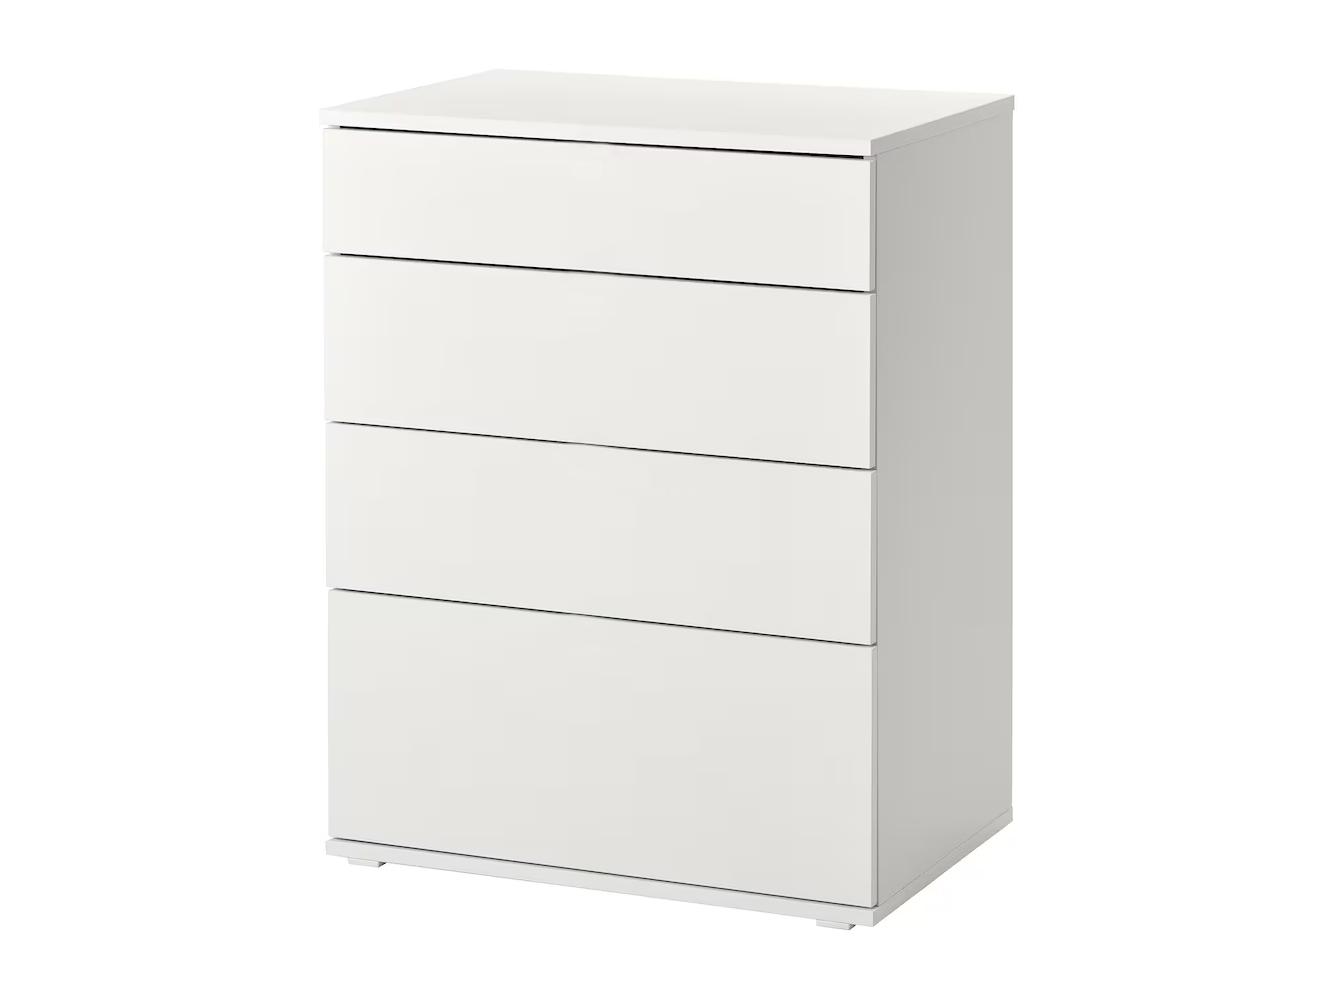 Комод Вихалс 117 white ИКЕА (IKEA) изображение товара